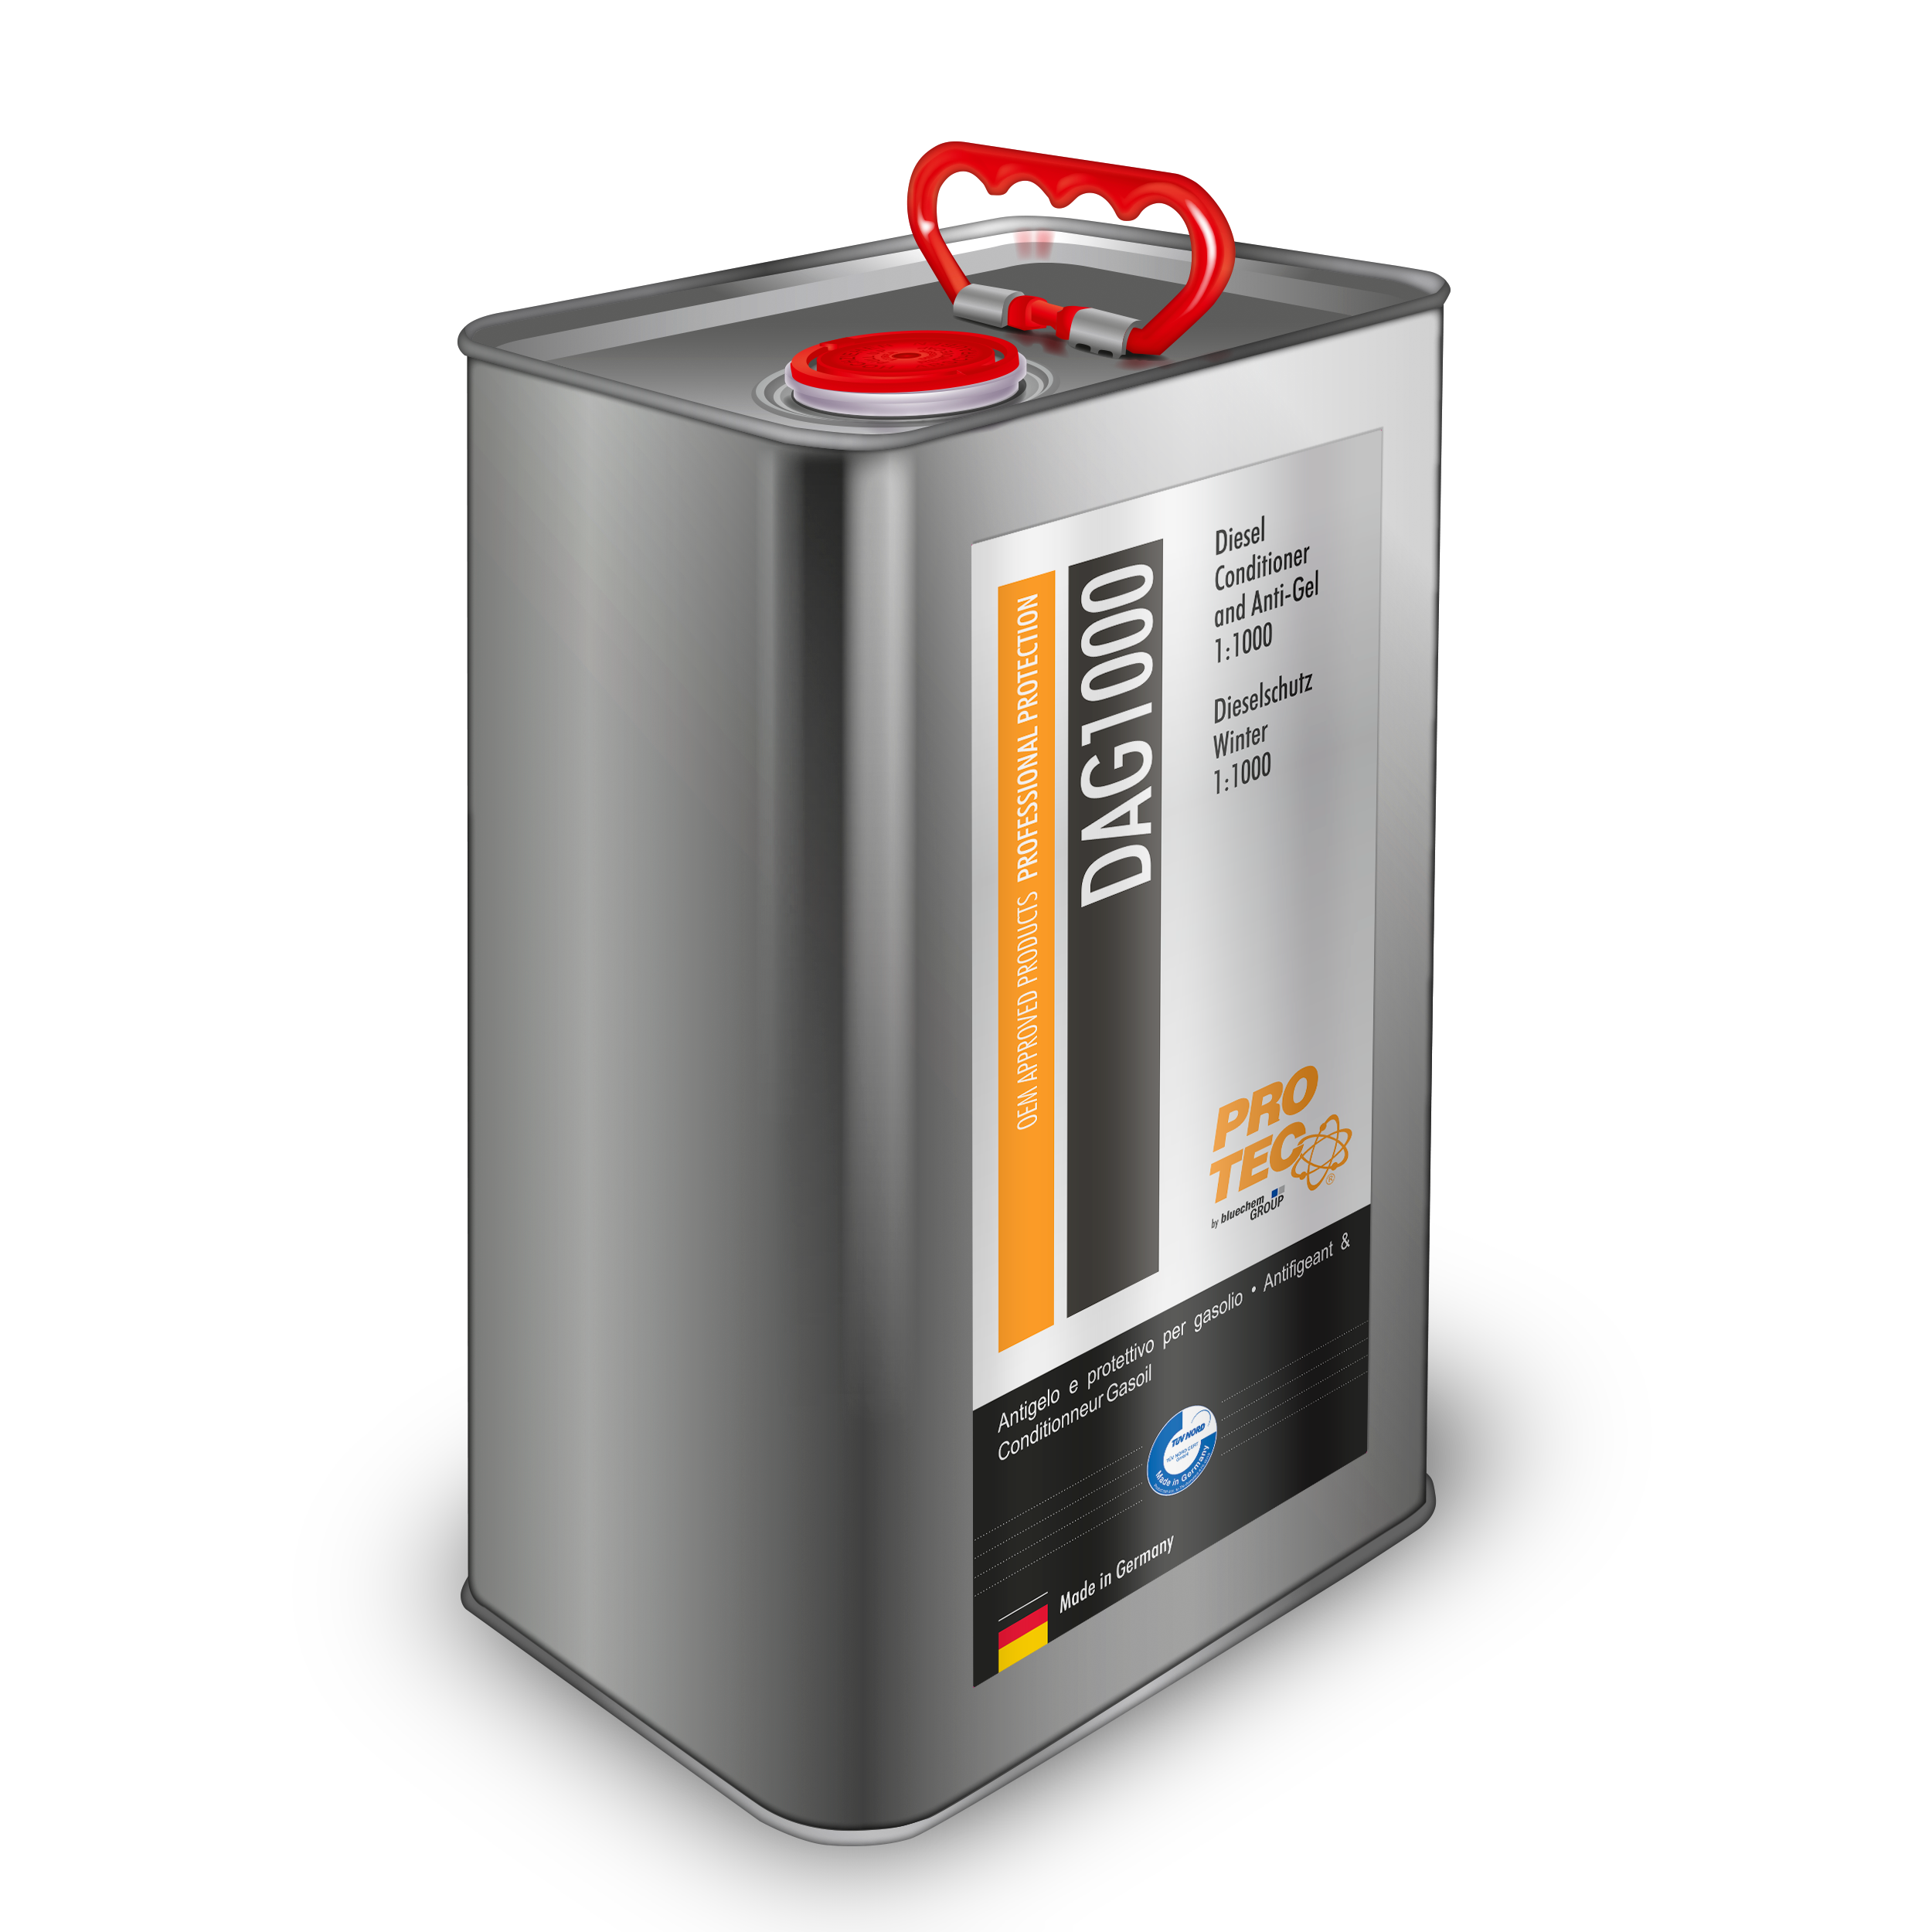 PRO-TEC Diesel Conditioner Anti Gel 1:1000 10l